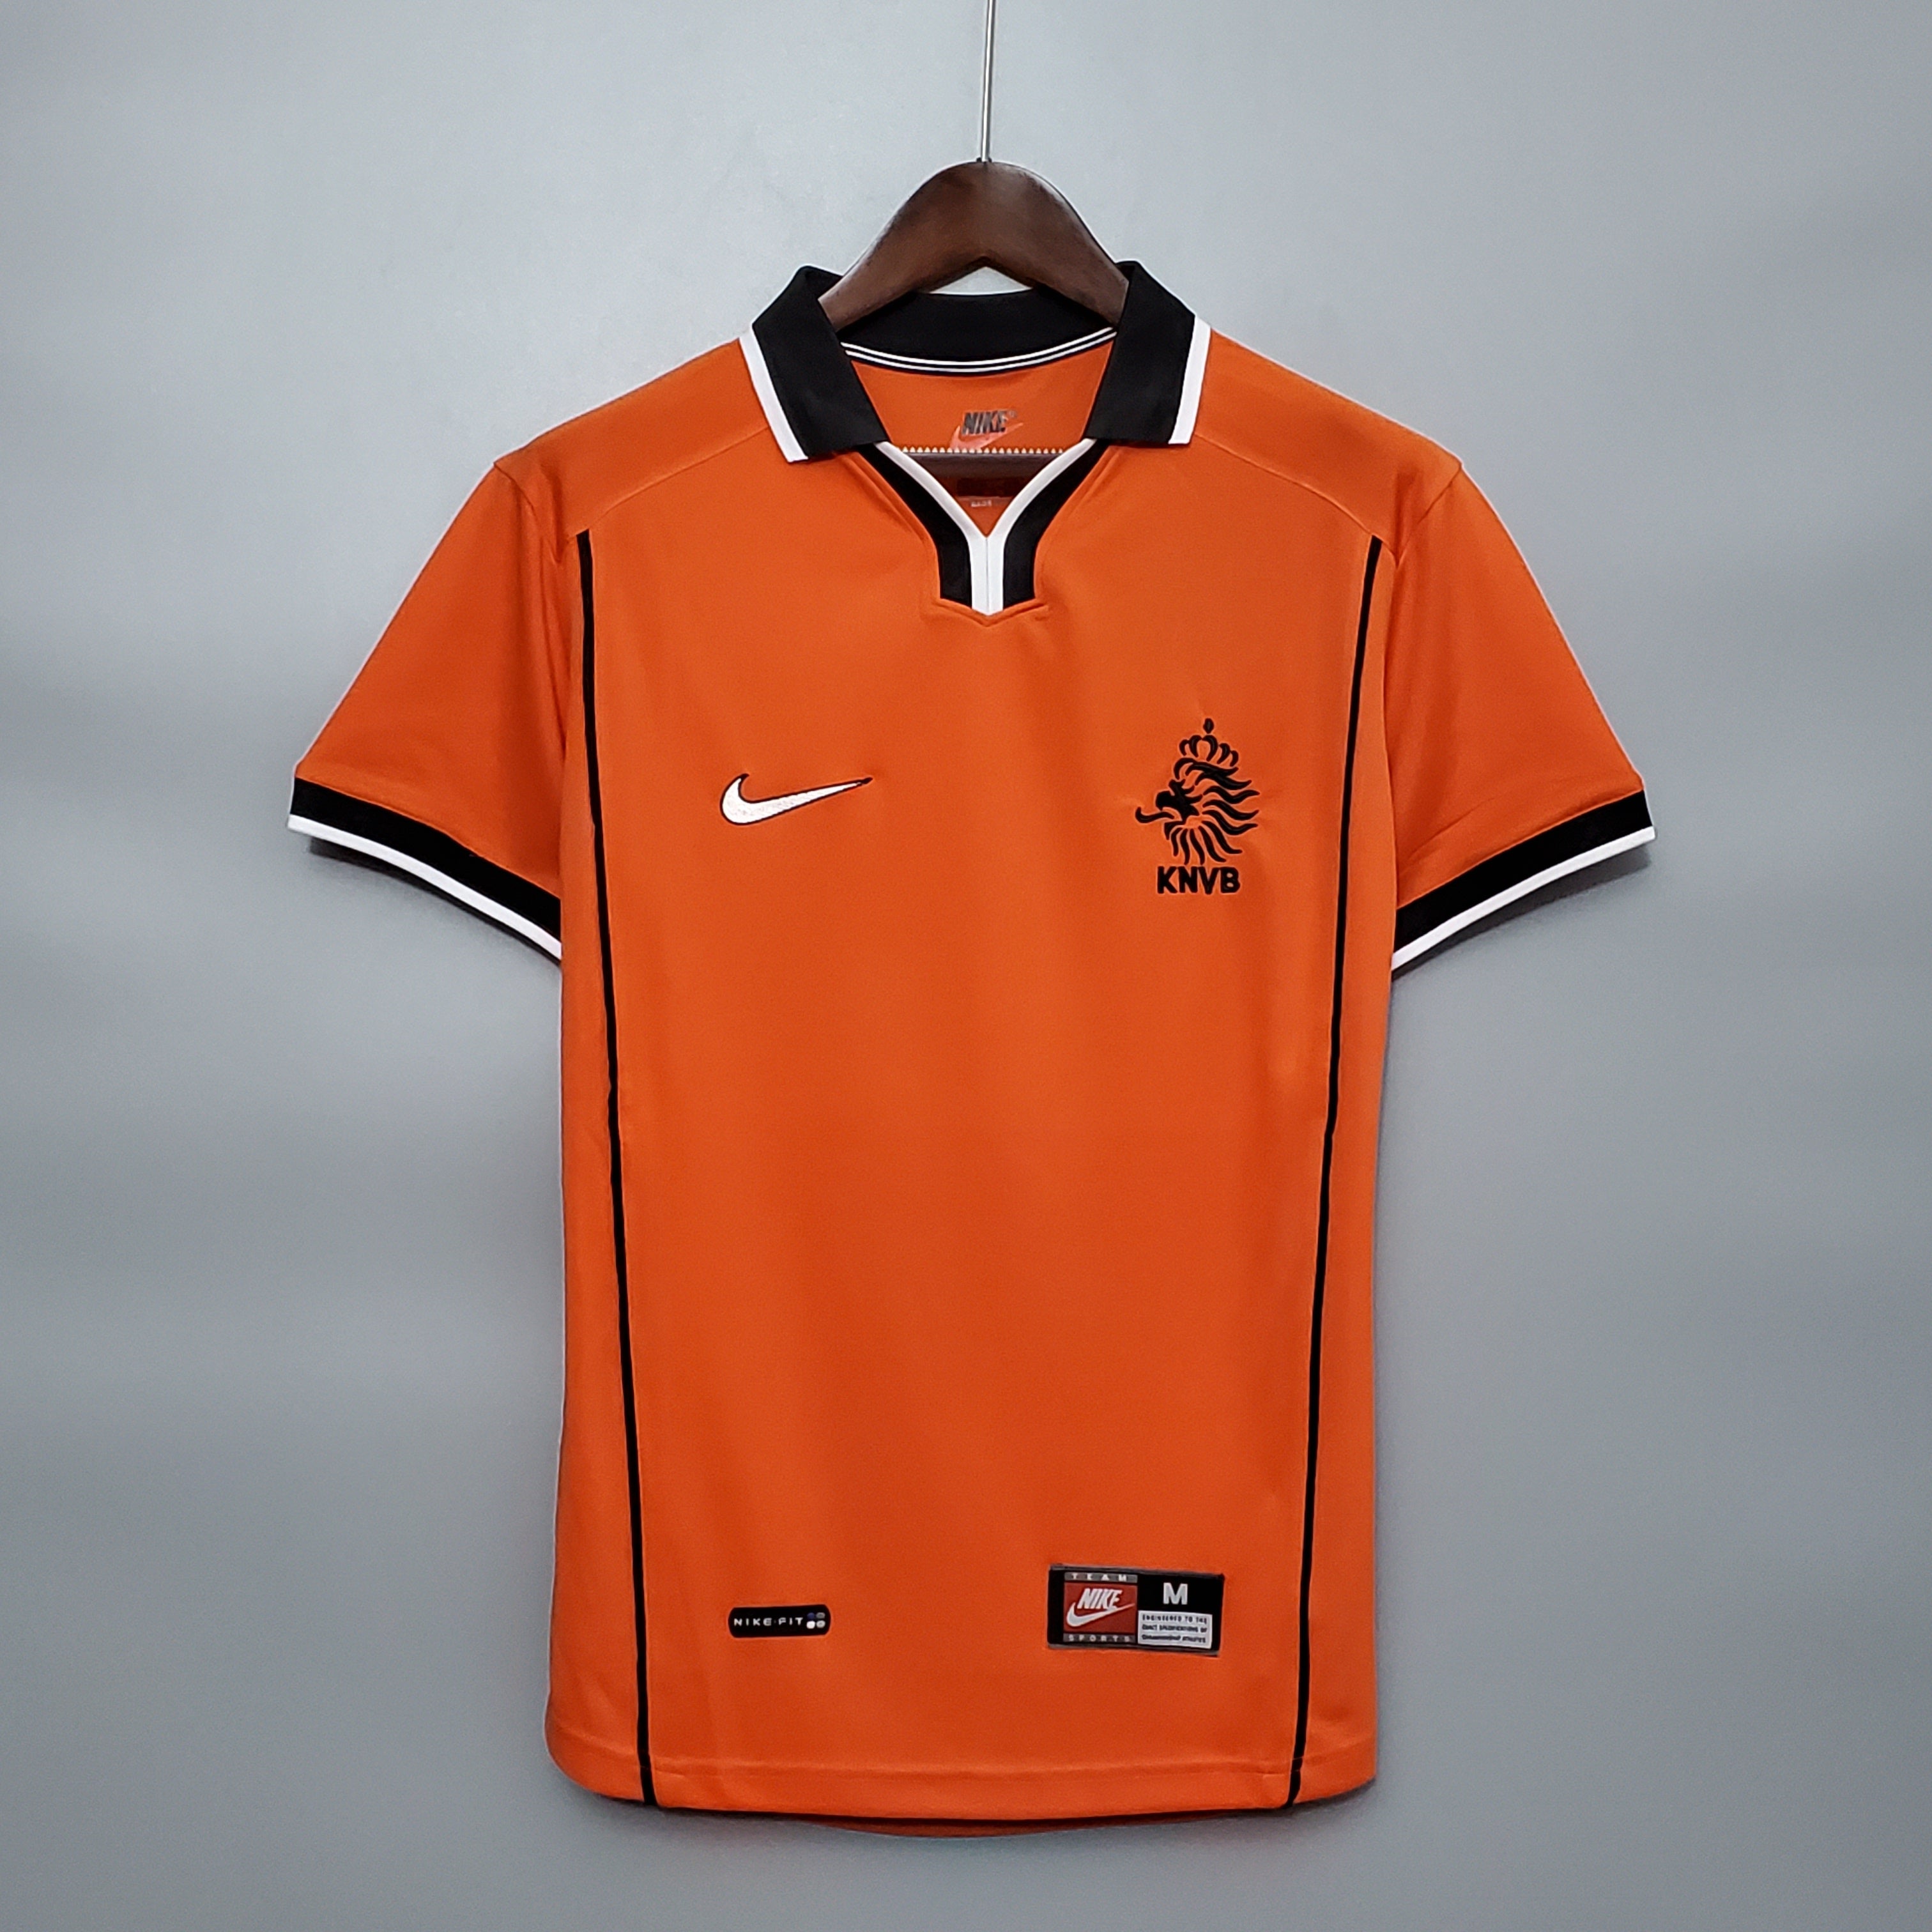 Official KNVB Holland Netherlands Soccer Jersey Size Large Black Orange  Football